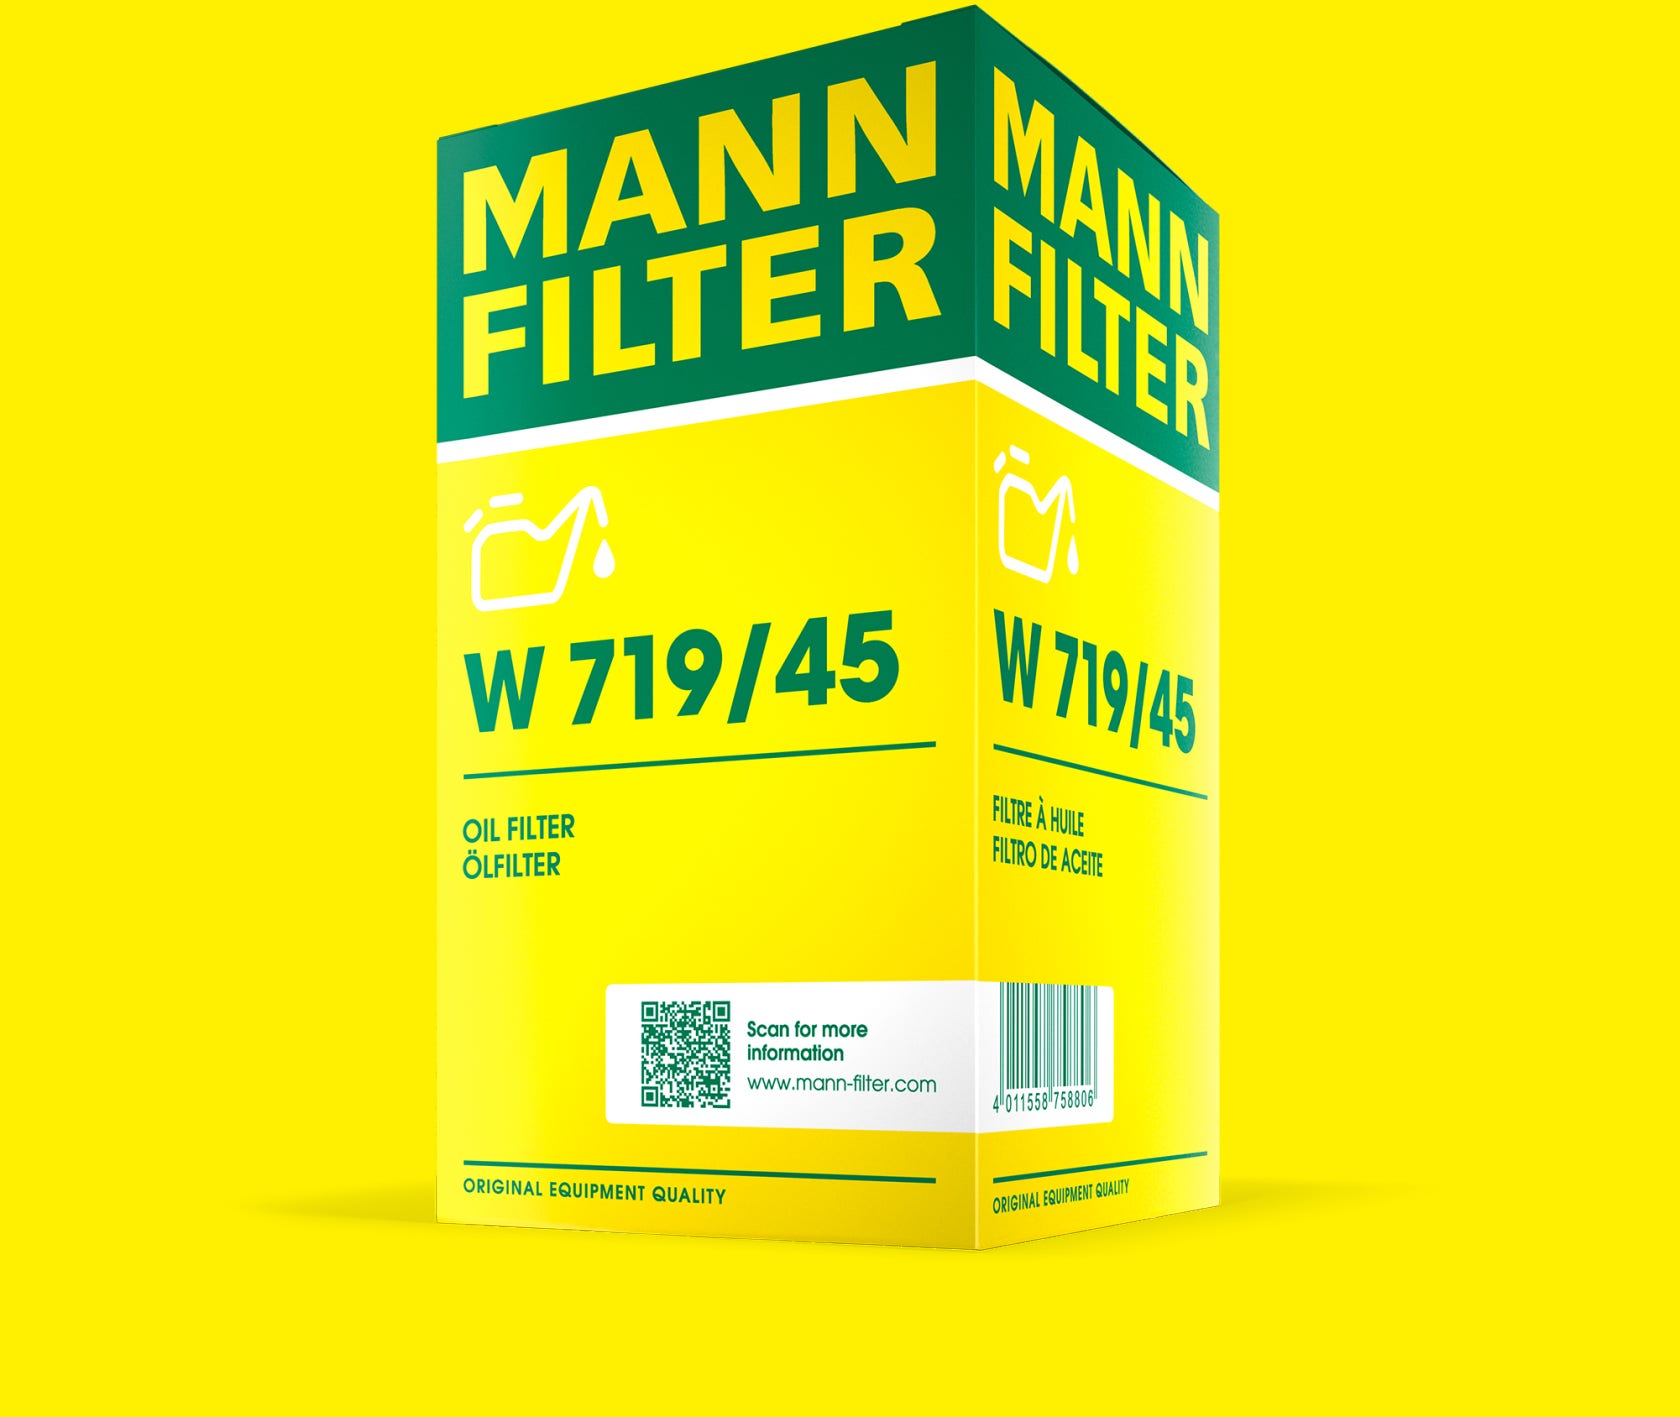 Nový design obalu MANN-FILTER zobrazený na příkladu balení olejového filtru w719/45